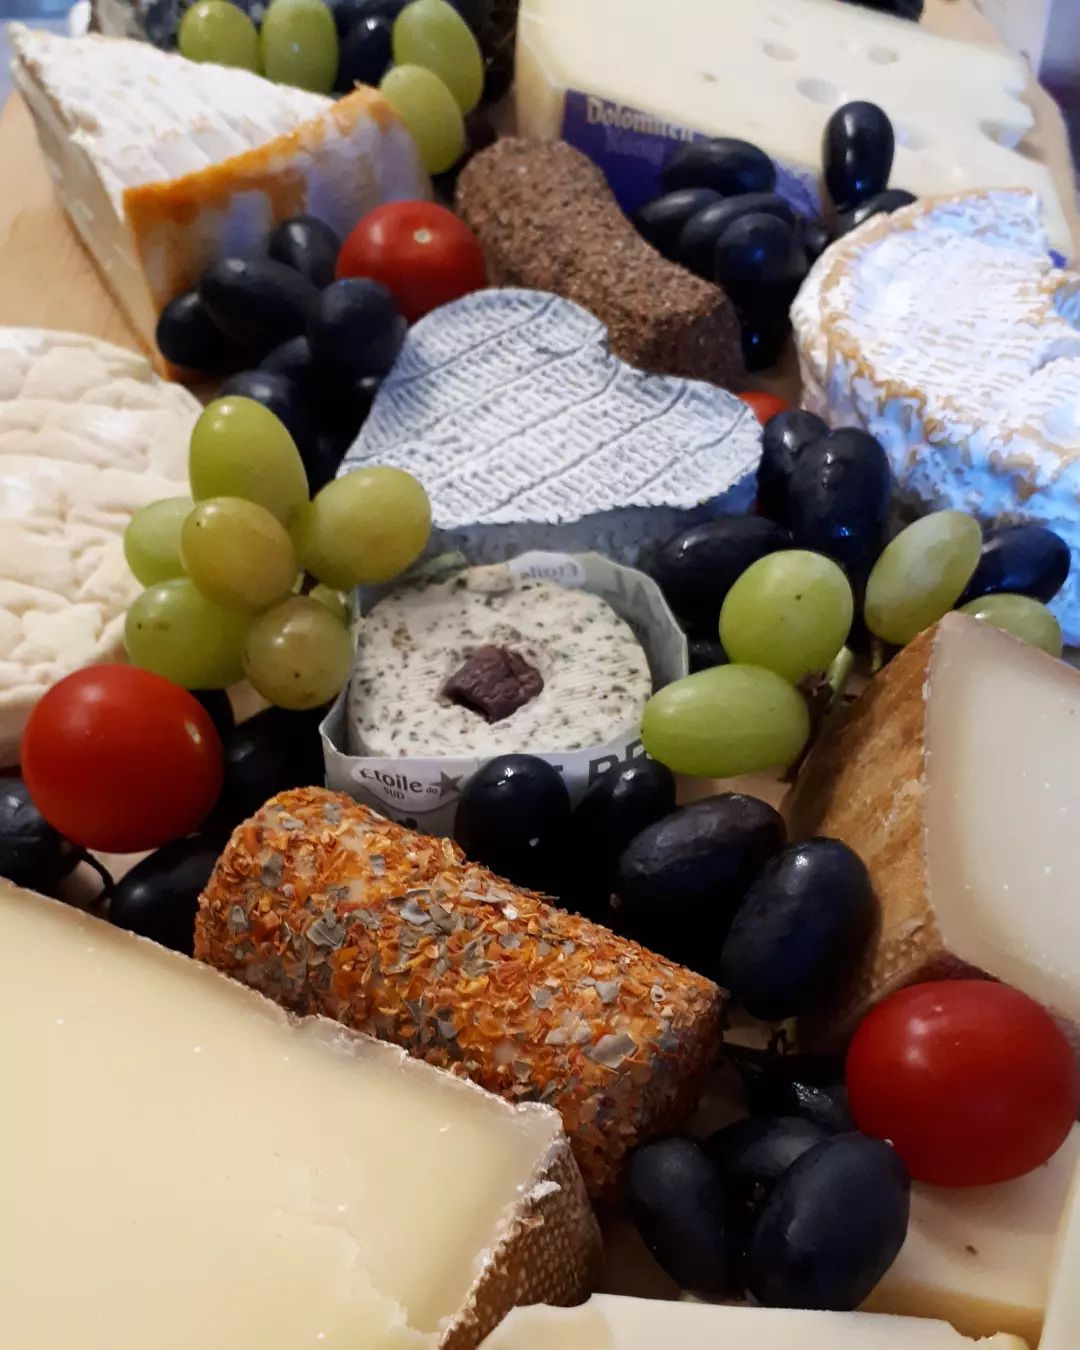 Einen Grund zum Feiern gibt's immer 🧀🍷🍇😋
#käse #cheese #fromage #formaggio #heidelbergfood #heidelberg #vegetarisch #käseecke #küchererskäseecke #käseplatte #käseundwein #hendesse #handschuhsheim #ichliebekäse #schmankerl #käseliebe #delikatessen #spezialitäten #käsemachtglücklich #leckeraufsbrot #savoirvivre #feinkost #feinschmecker